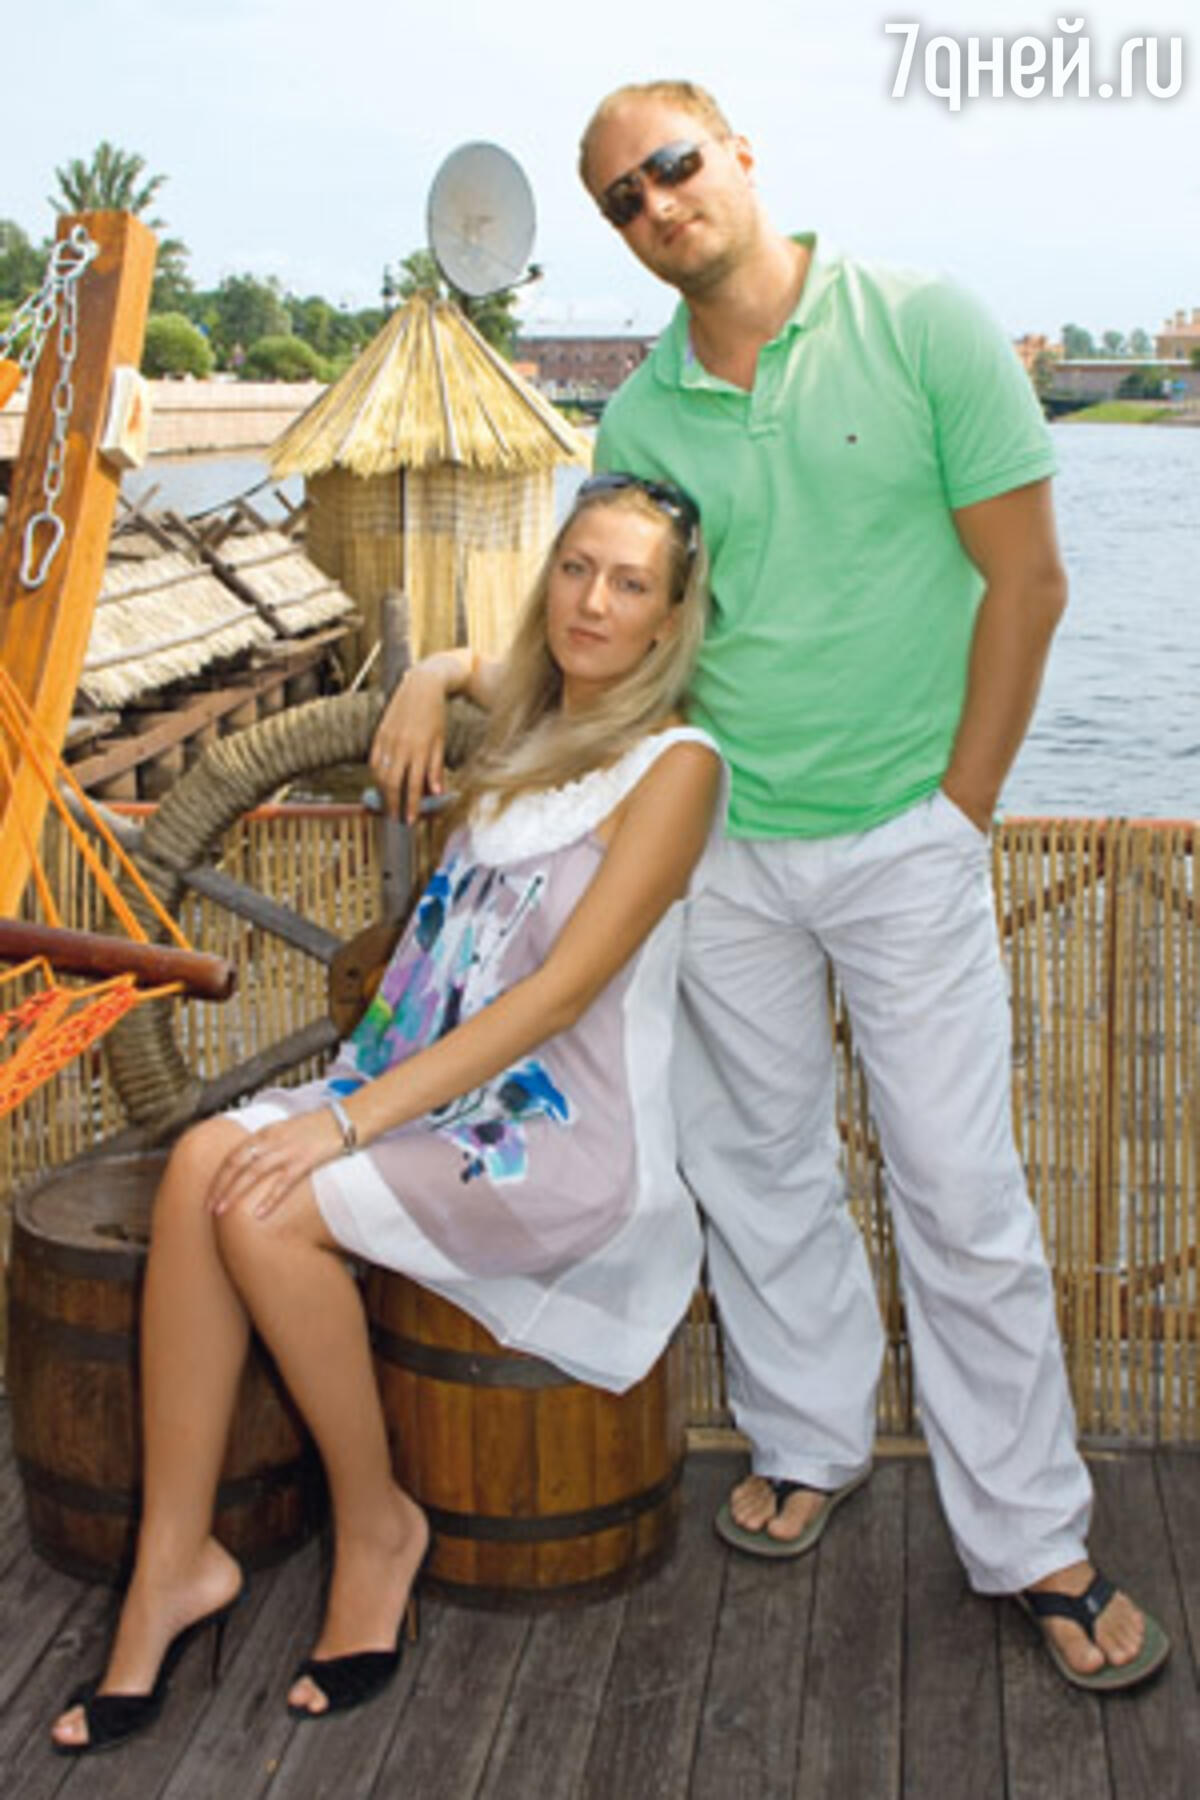 Биография андрея зиброва. Зибров актер с женой.